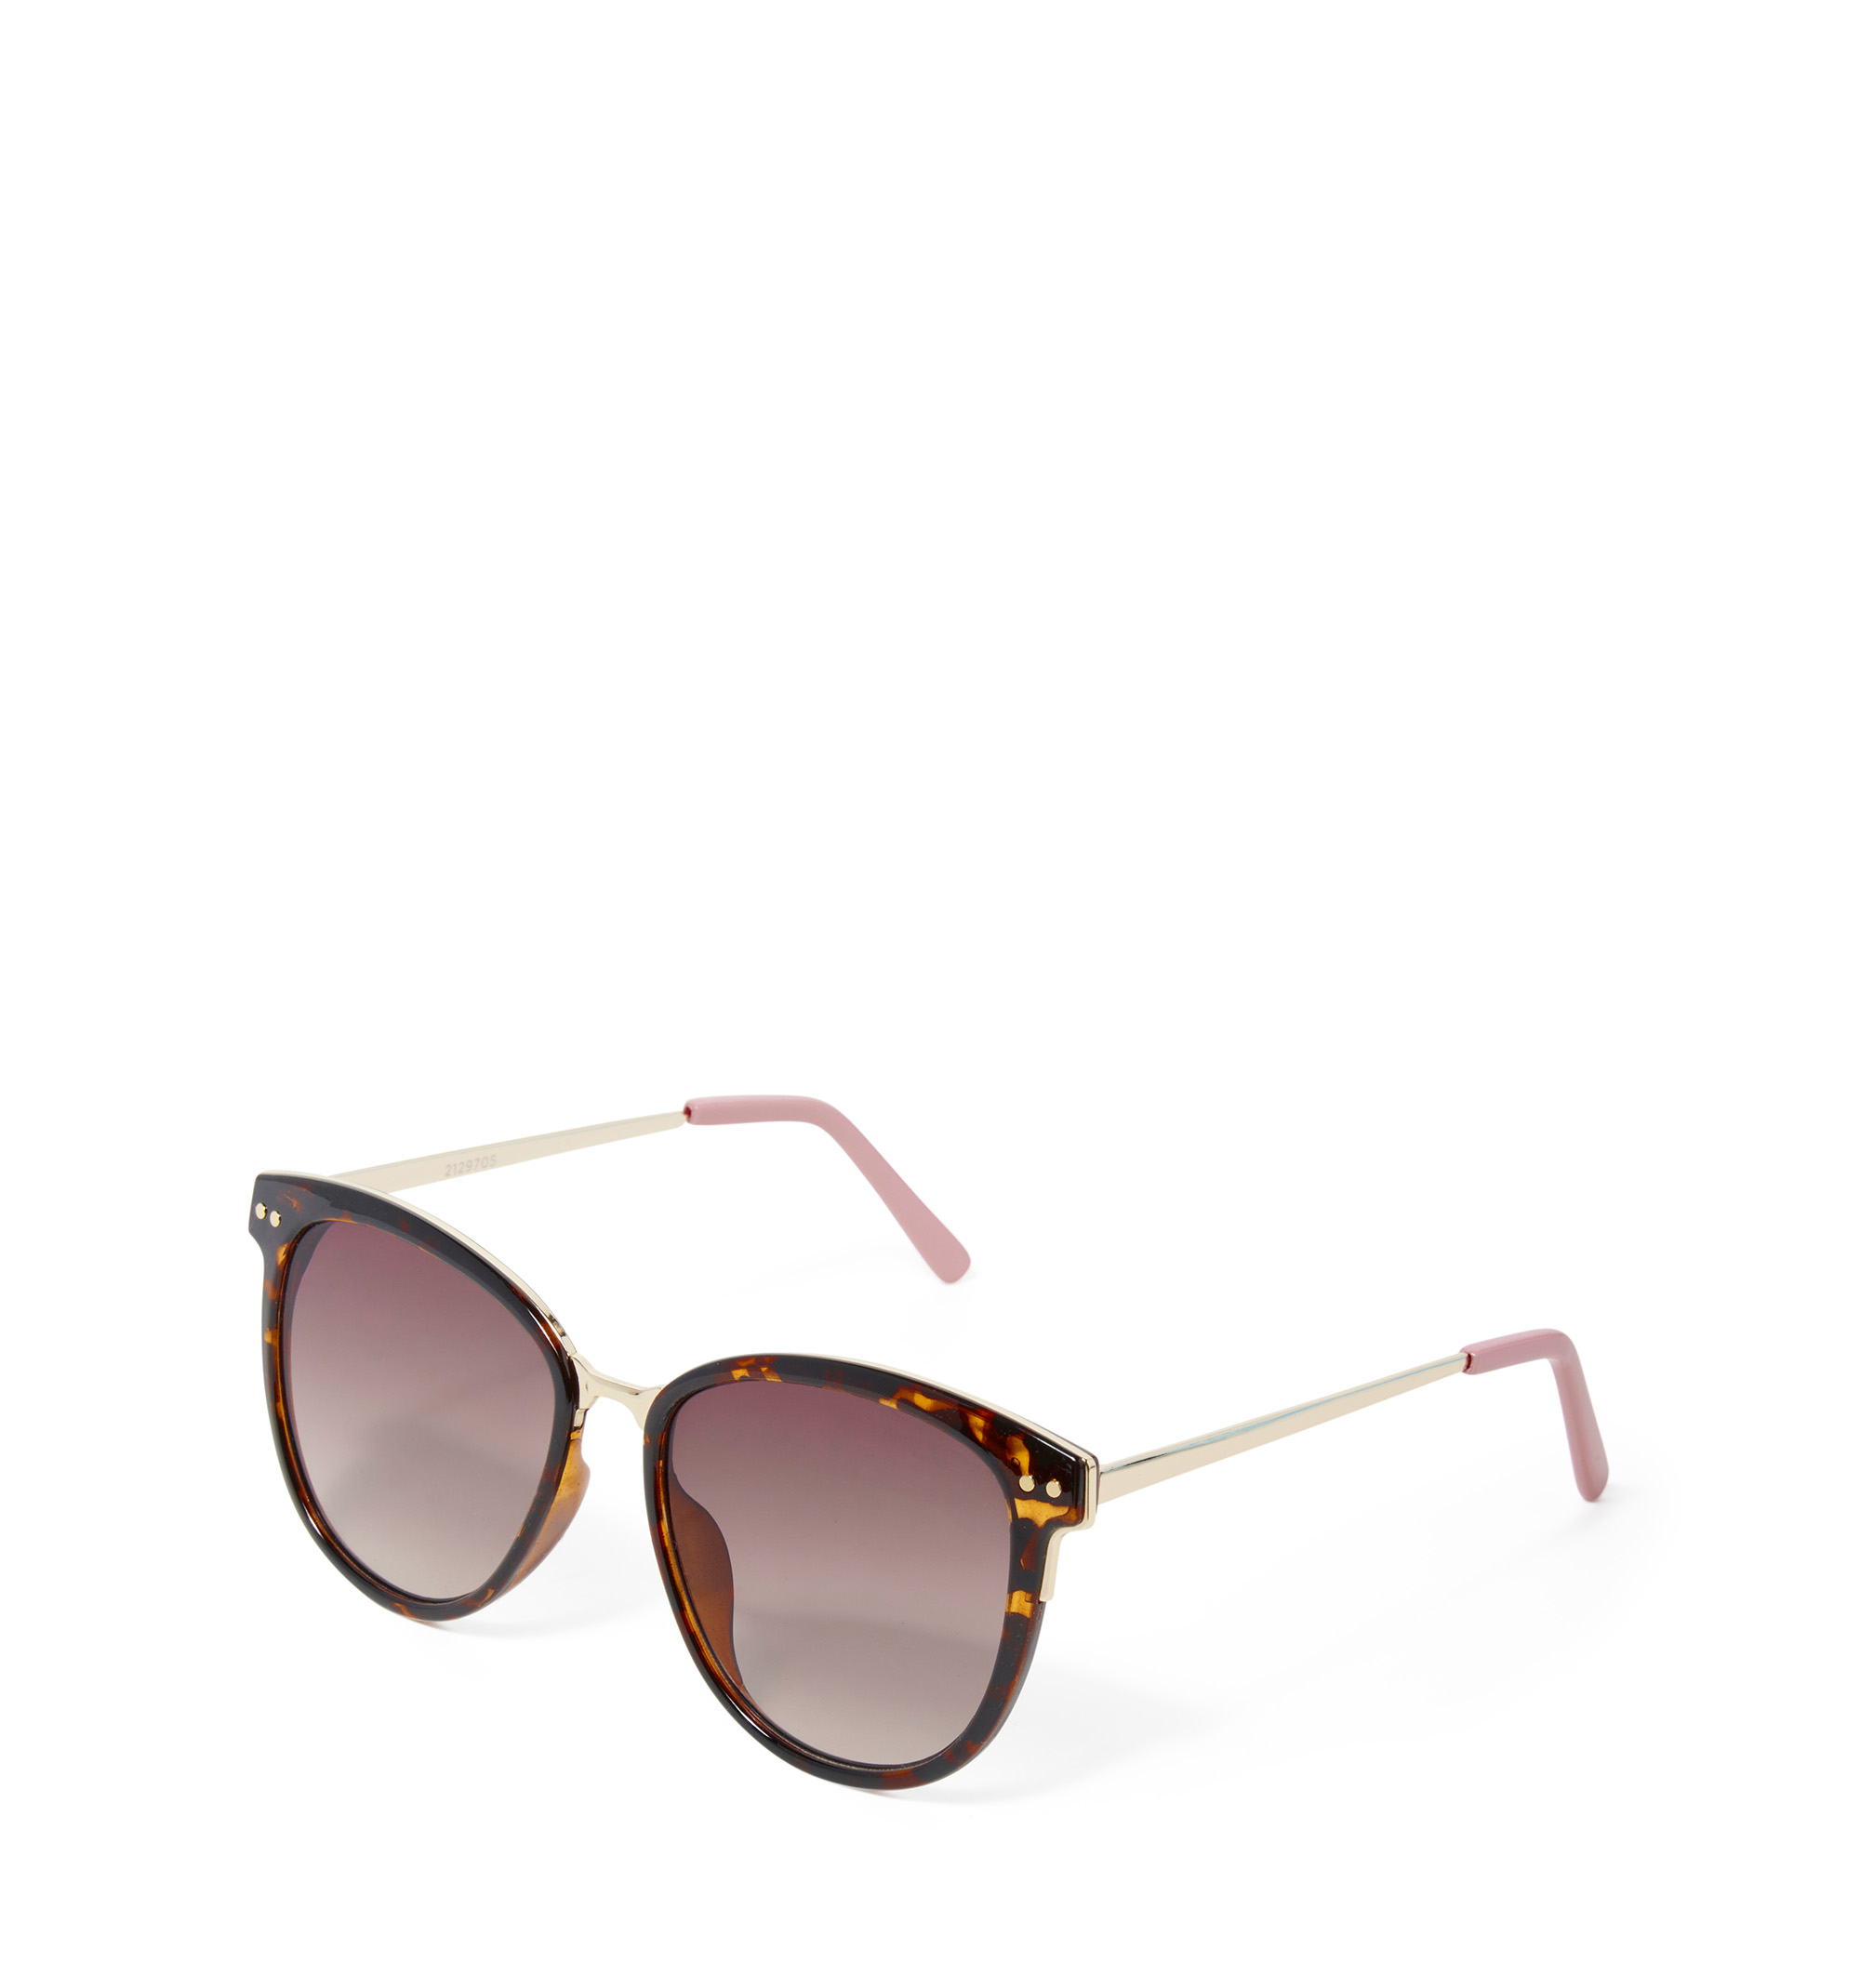 Fendi Fendigraphy Oval Sunglasses, 54mm | Bloomingdale's